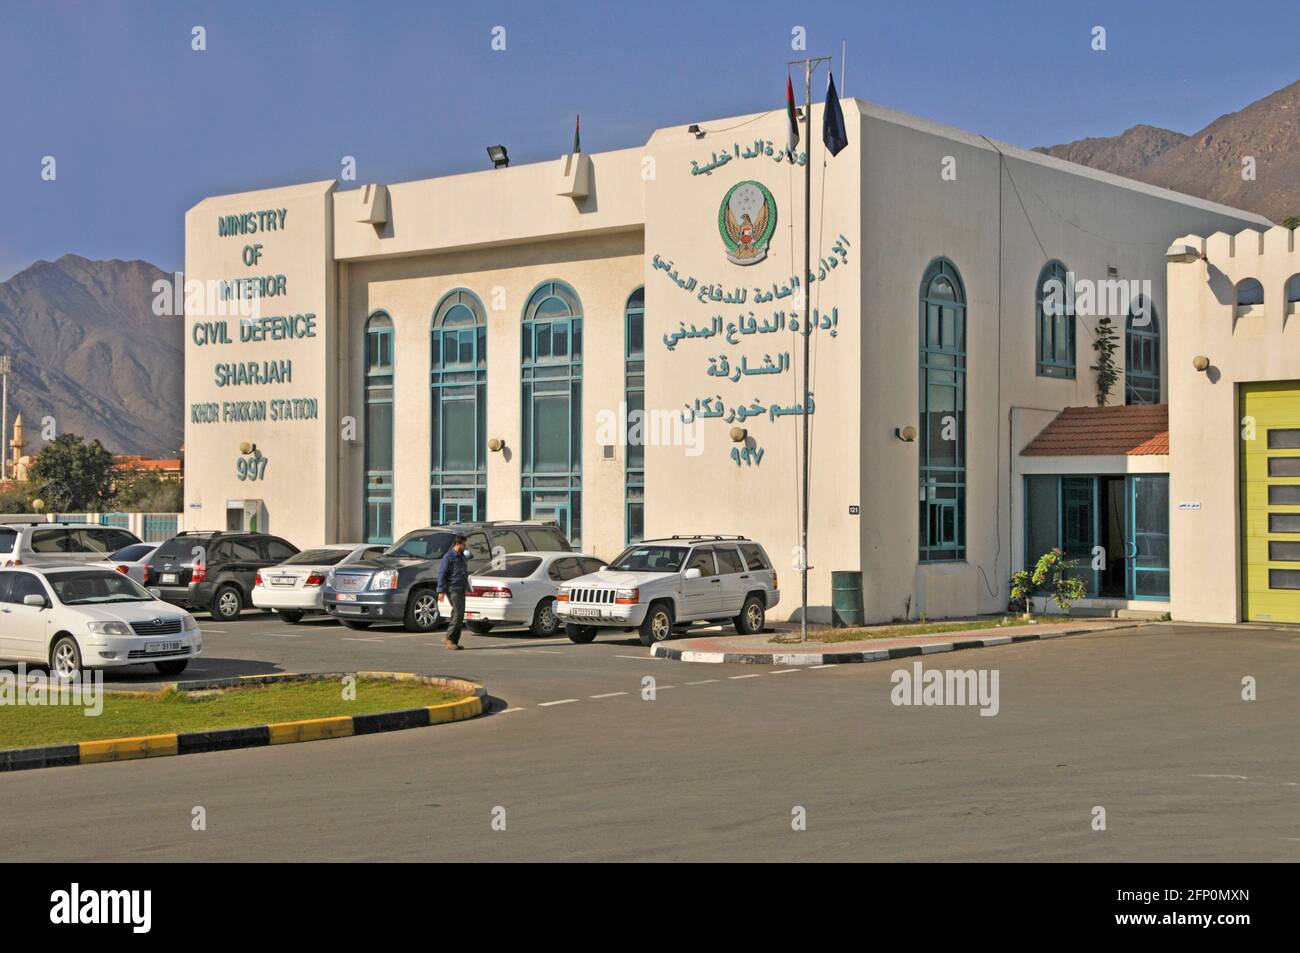 Insegne bilingue esterno dell'edificio governativo del Ministero degli interni Emirato della Difesa civile di Sharjah e parcheggio degli Emirati Arabi Uniti Medio Oriente Foto Stock